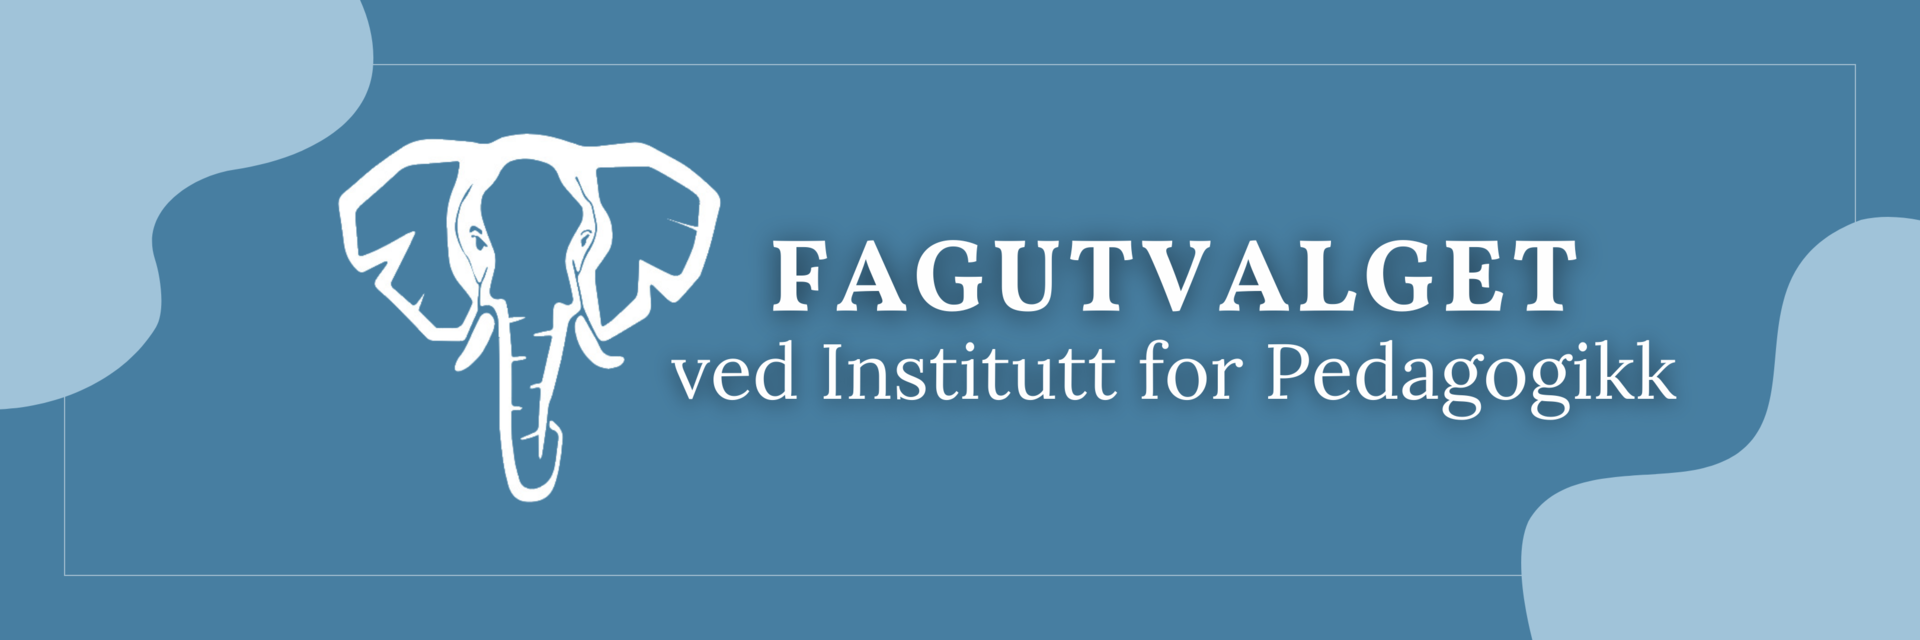 Logoen til fagutvalget ved Institutt for pedagogikk